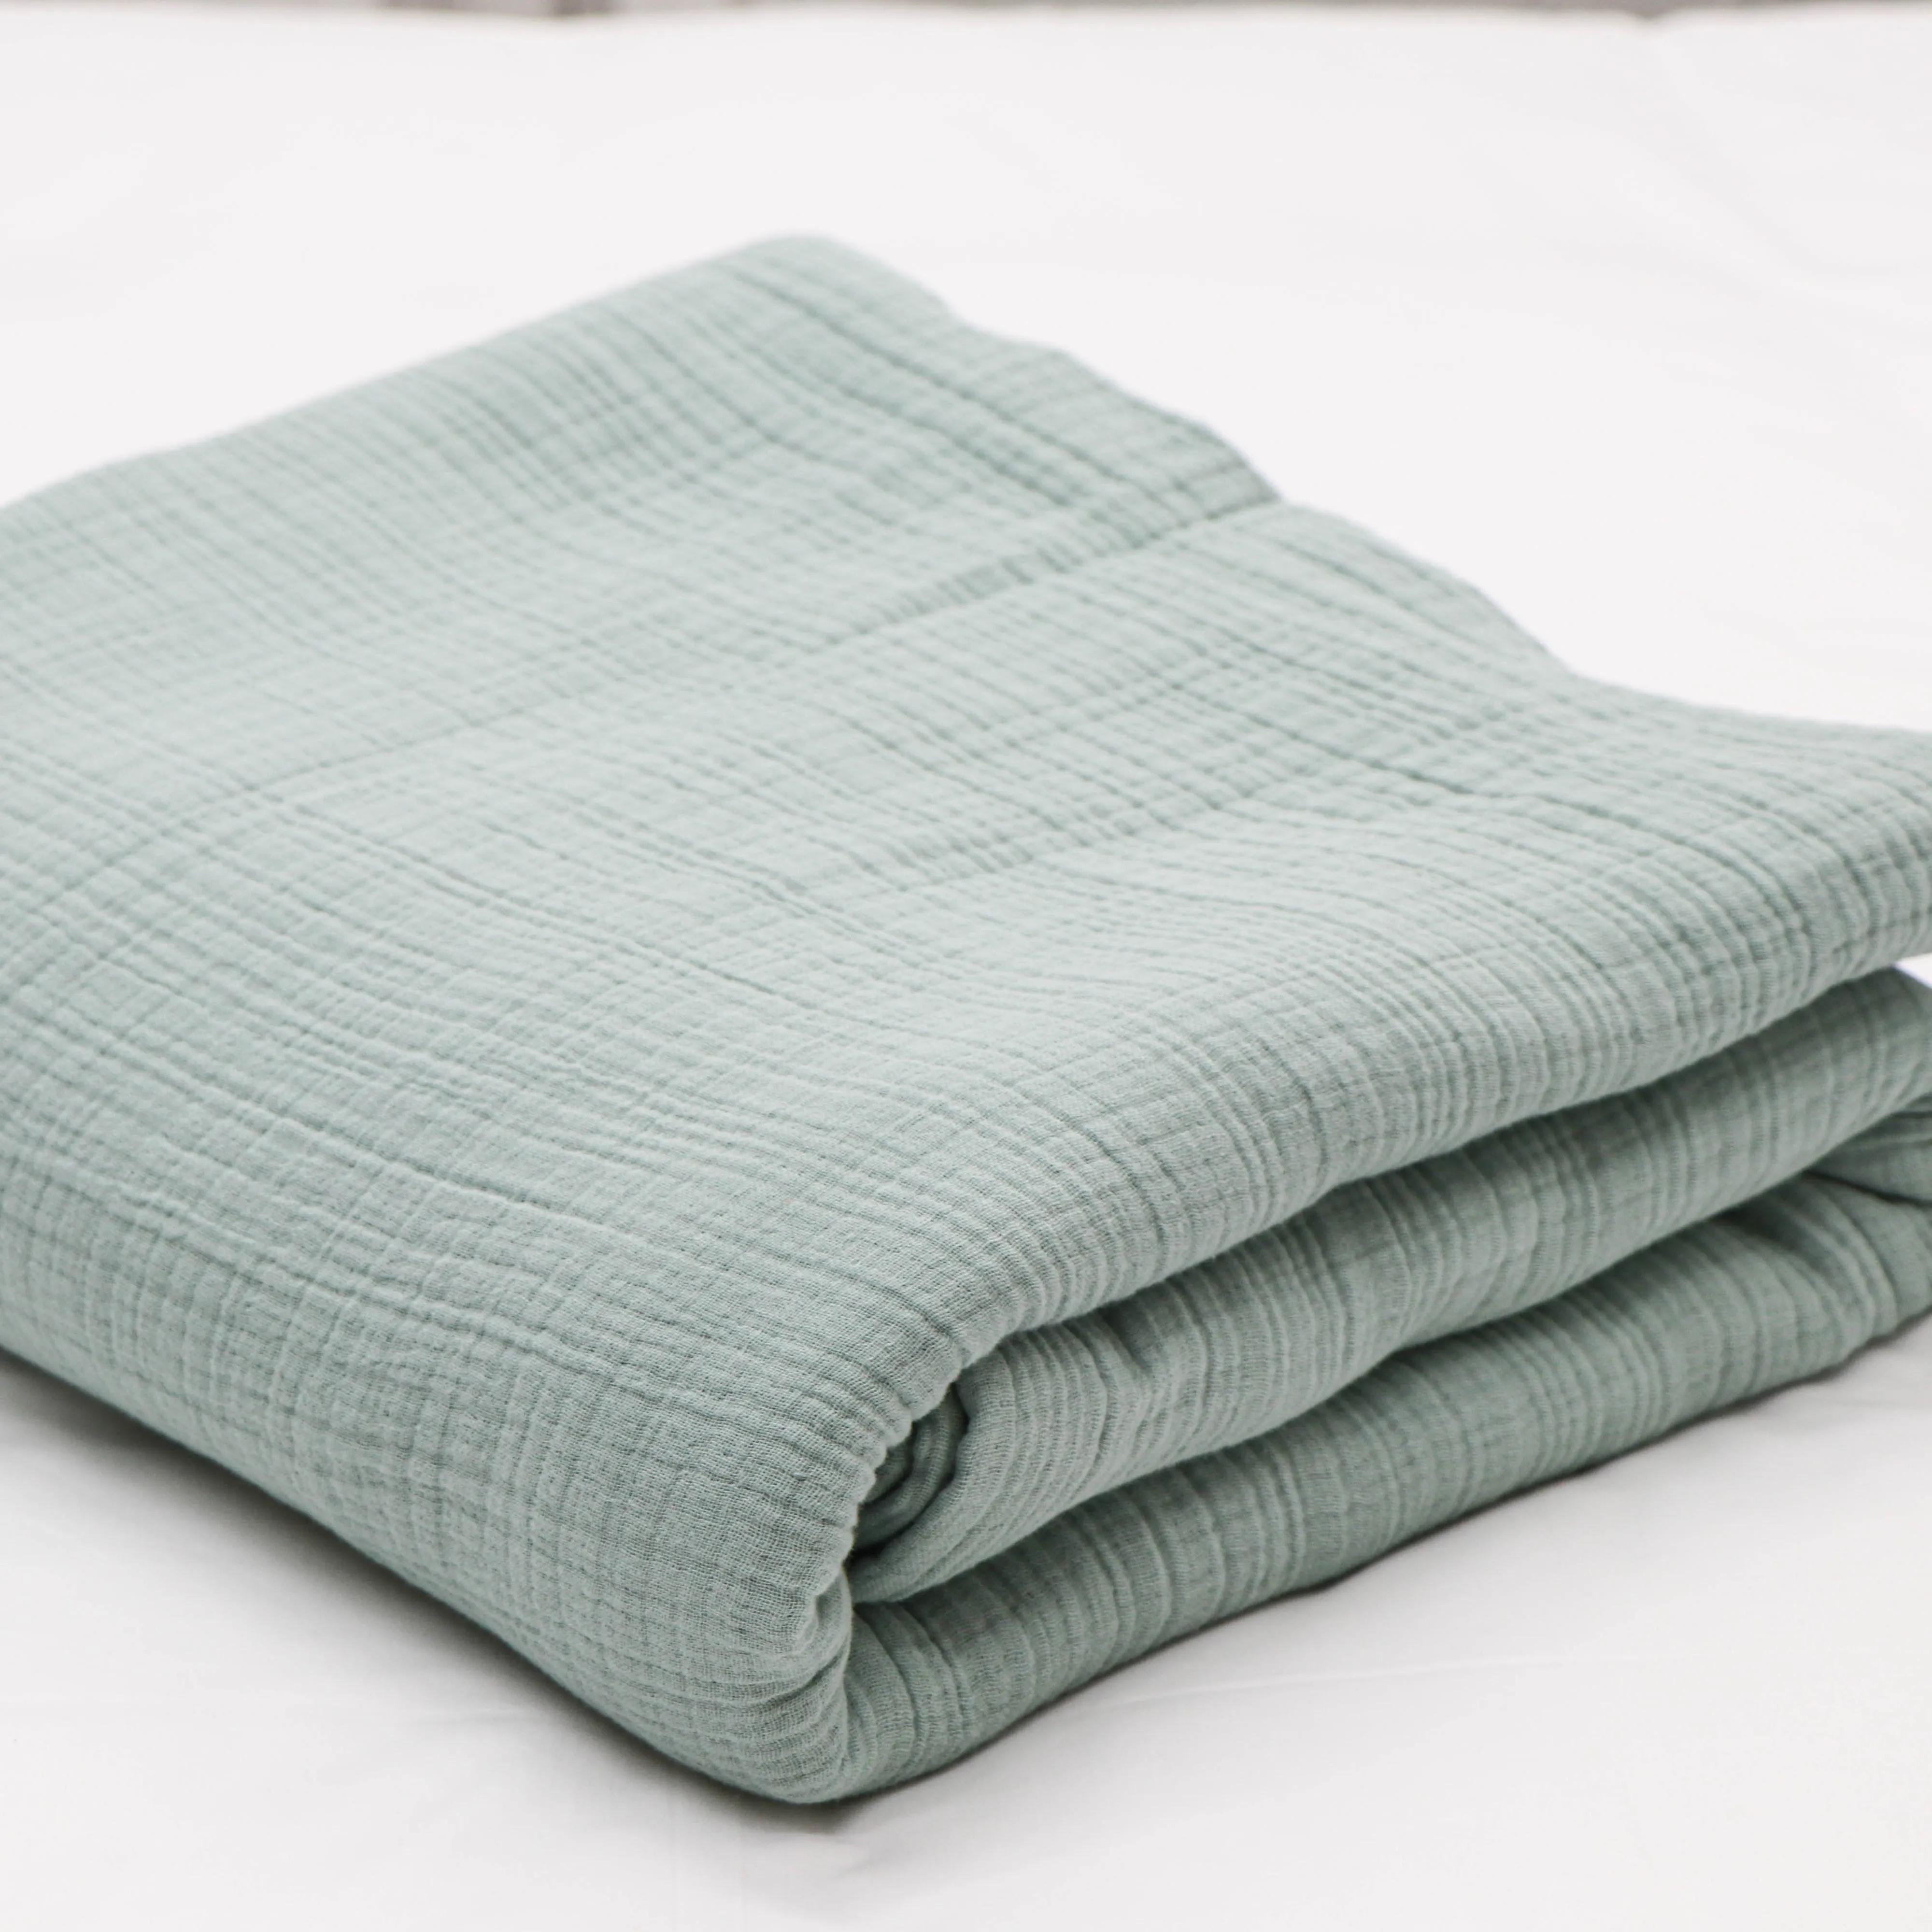 بطانية قماشية متعددة الألوان من القطن الخالص بلون سائل وبتصميم كلاسيكي مناسبة للارتداء على الأريكة أو السرير مناسبة لجميع فصول السنة